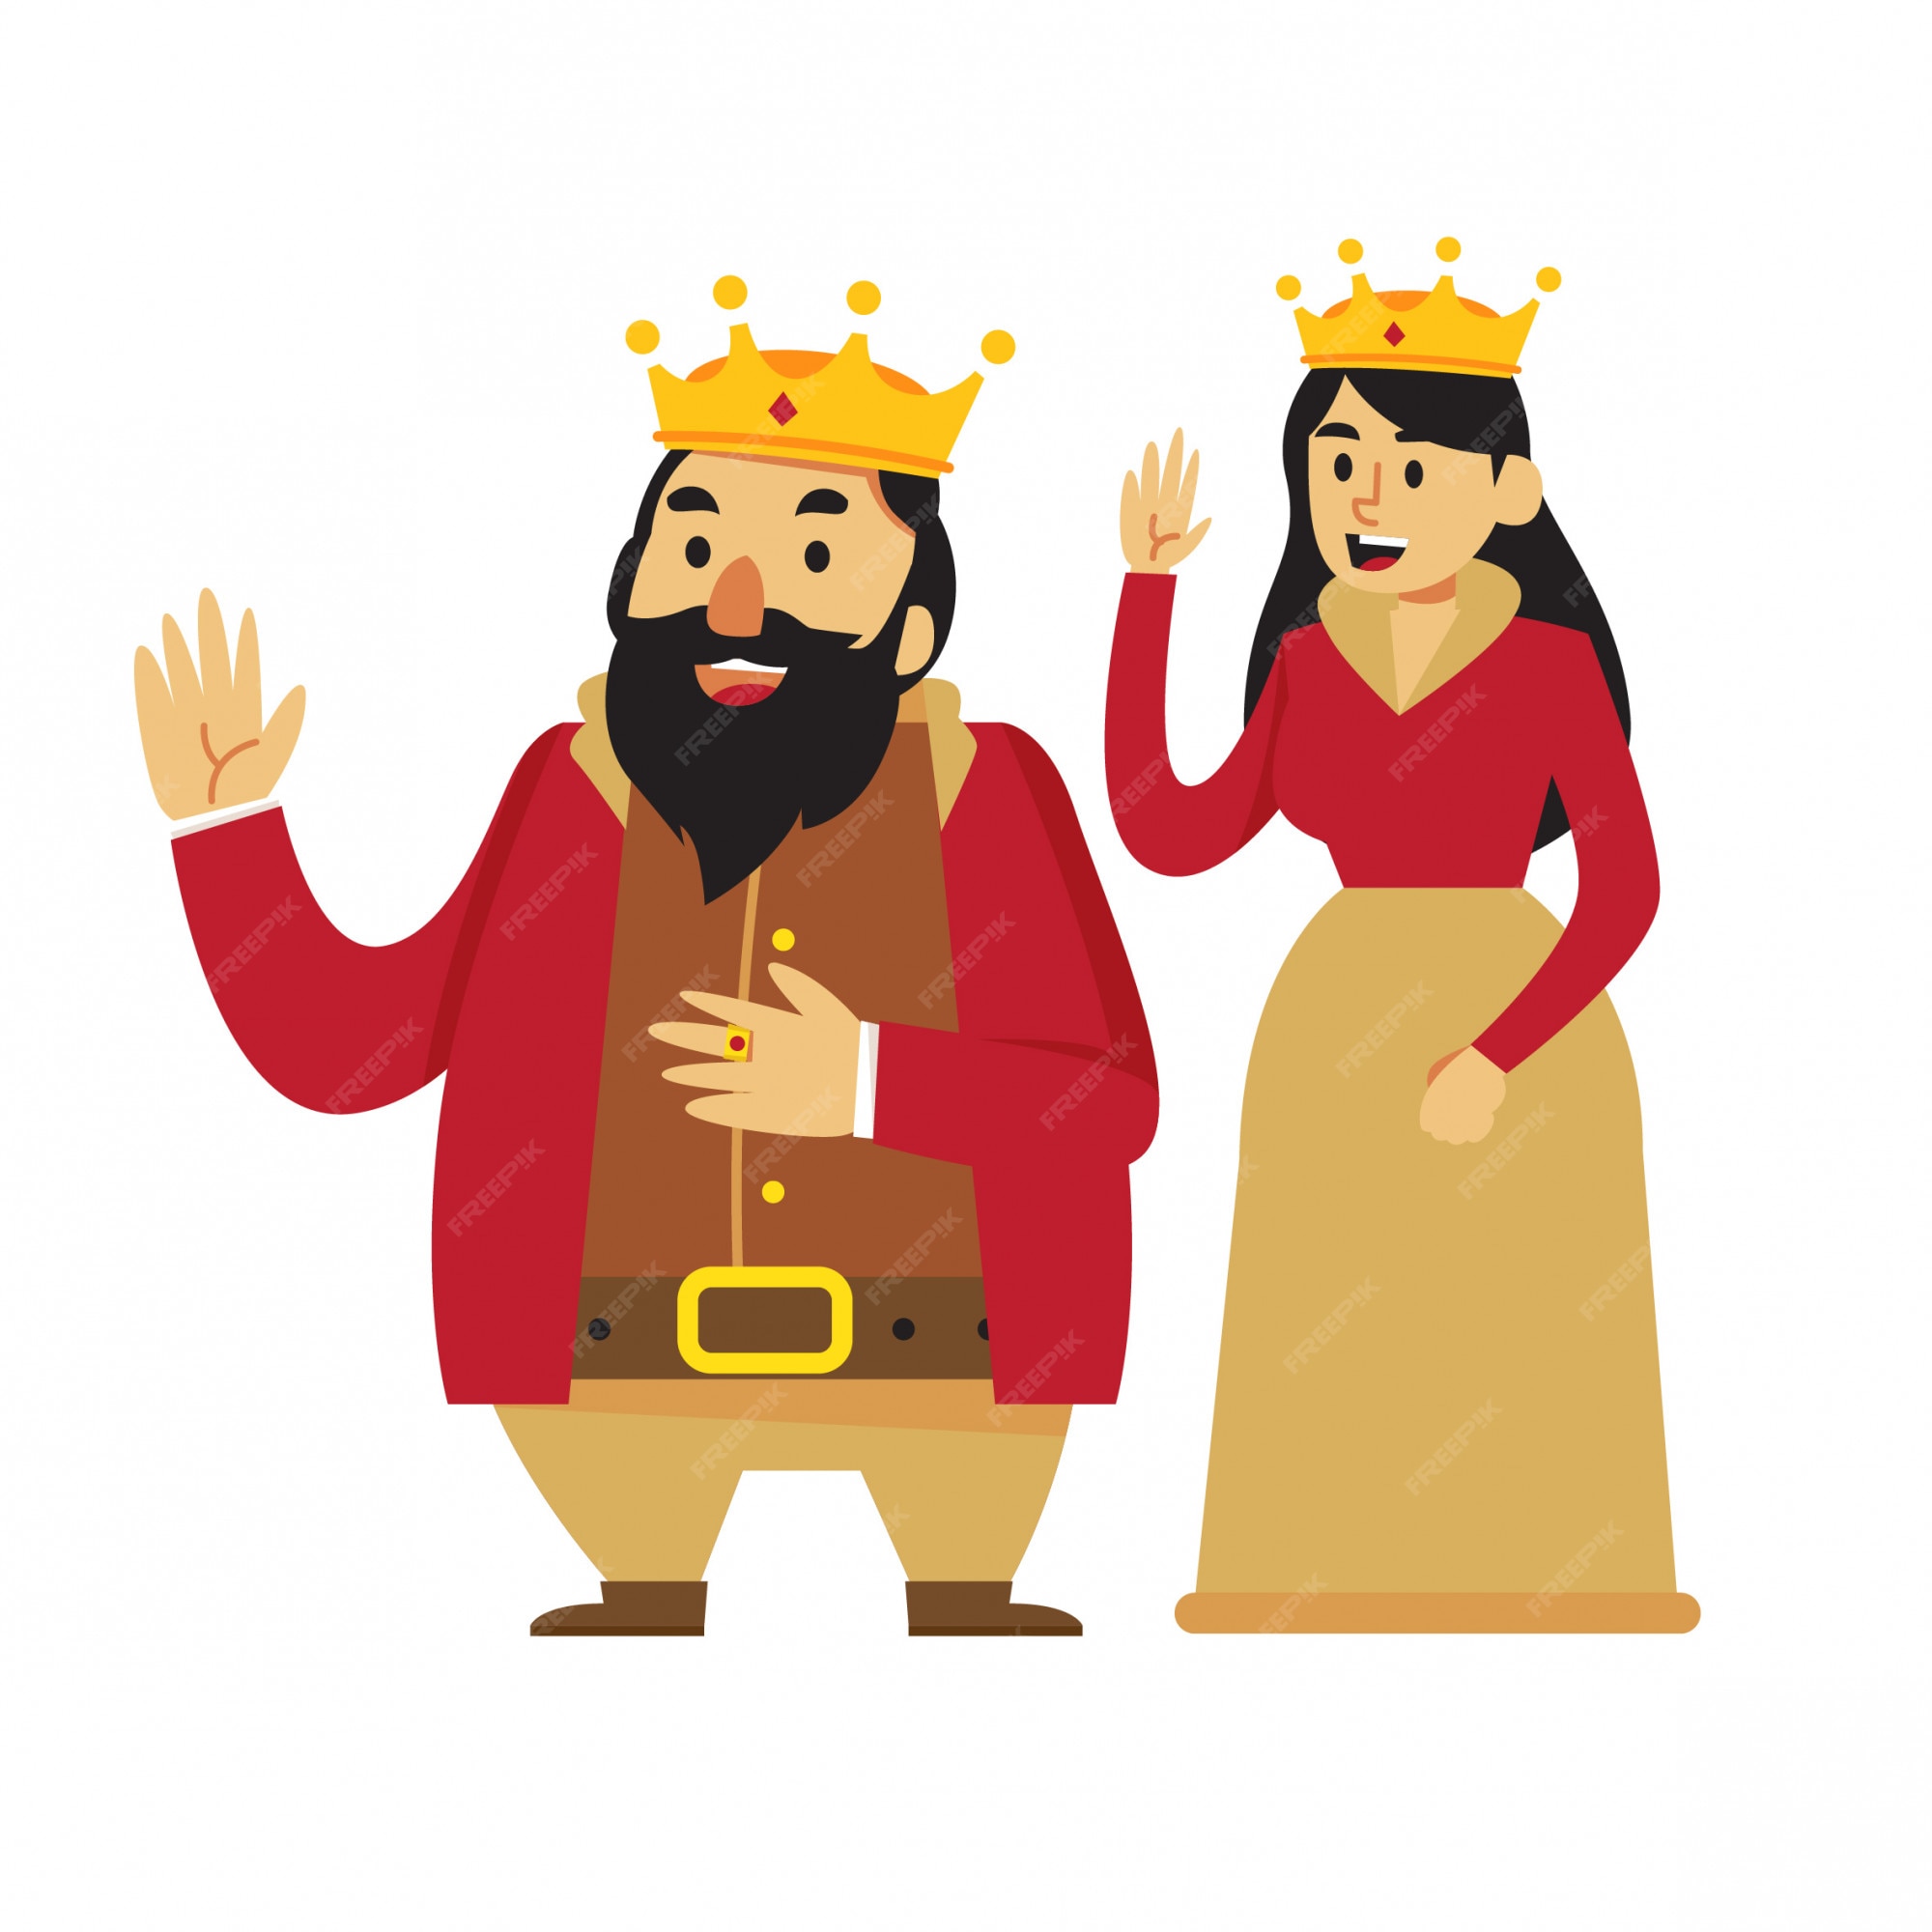 Premium Vector | King and queen cartoon